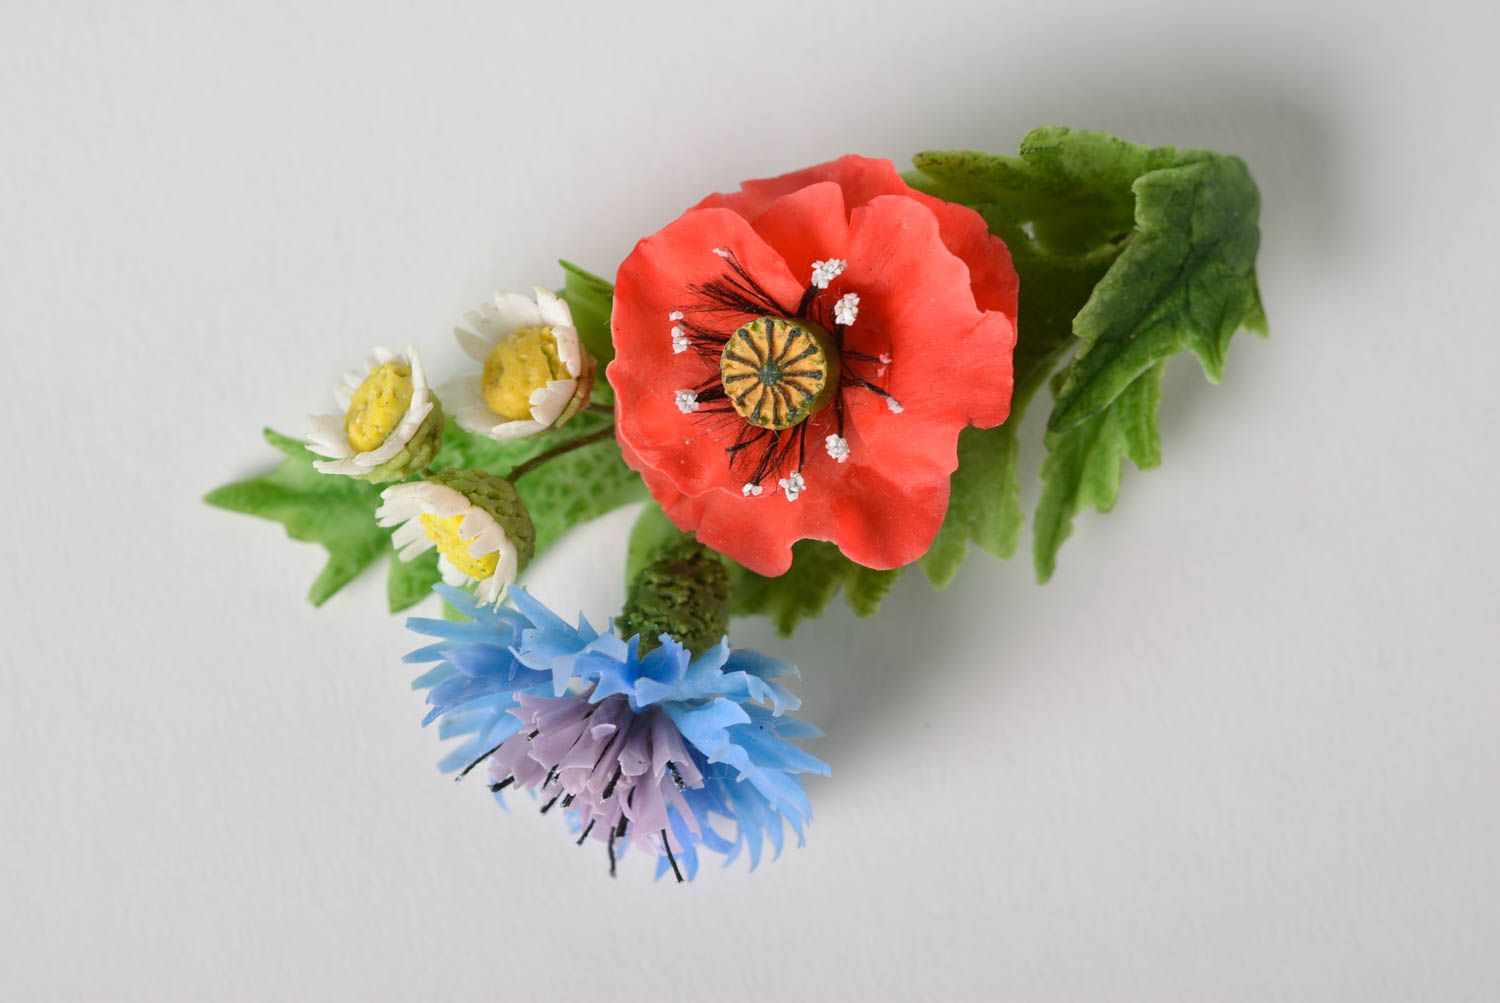 Брошь с цветами из полимерной глины небольшая яркая красивая ручной работы фото 5